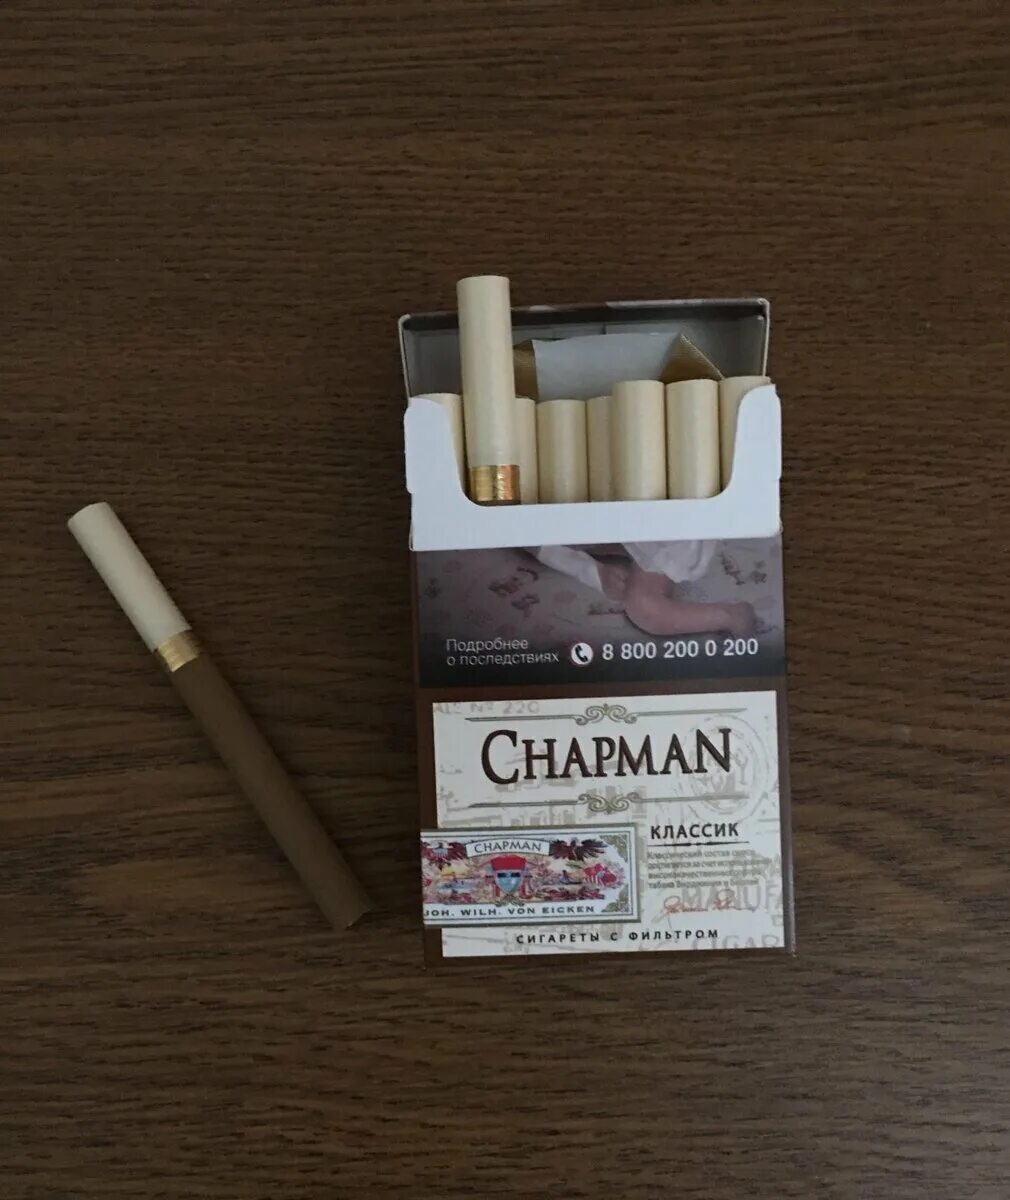 Виды сигарет чапман. Сигареты Чапман Браун тонкие. Чапмен сигареты Классик. Chapman сигареты вкусы Браун. Чапман сигареты класси.